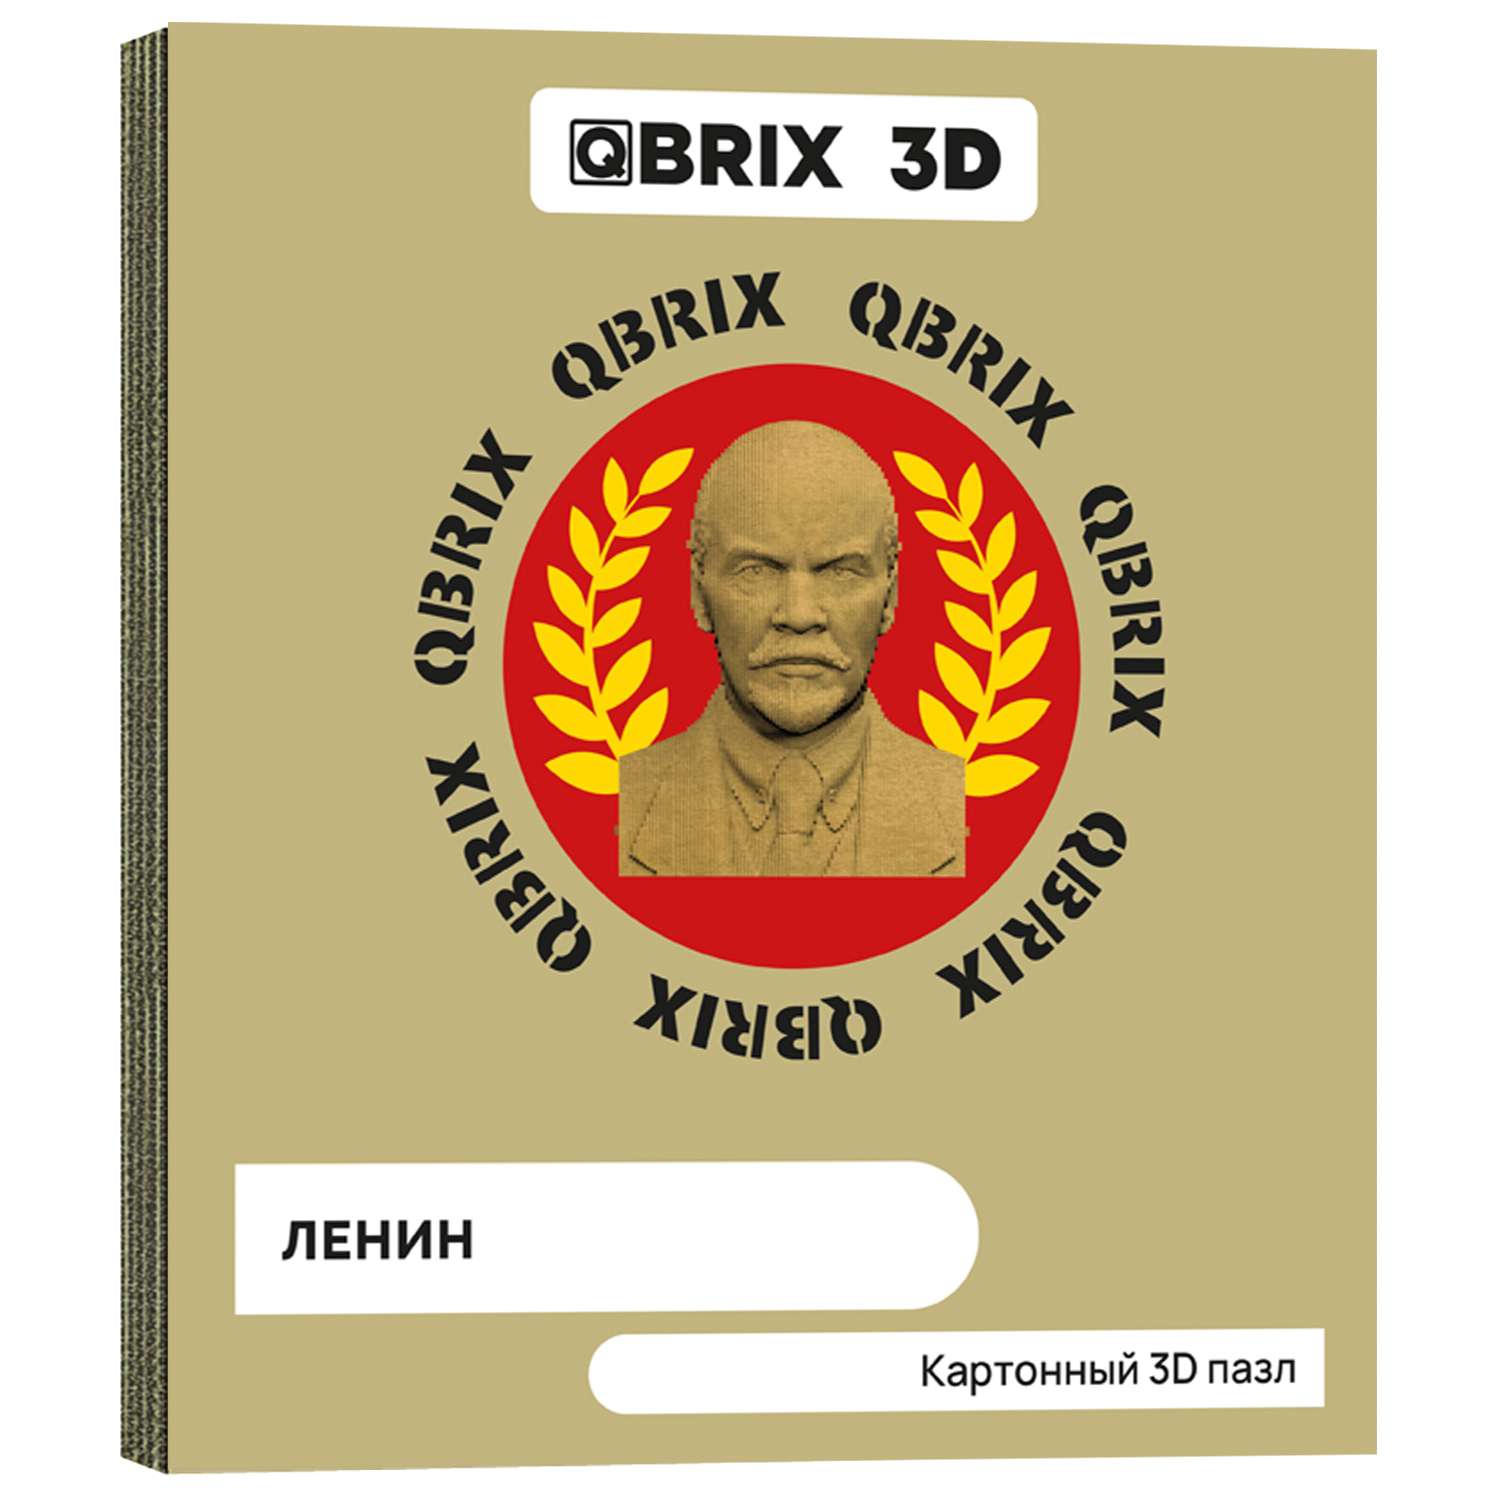 Конструктор QBRIX 3D картонный Ленин 20031 20031 - фото 1